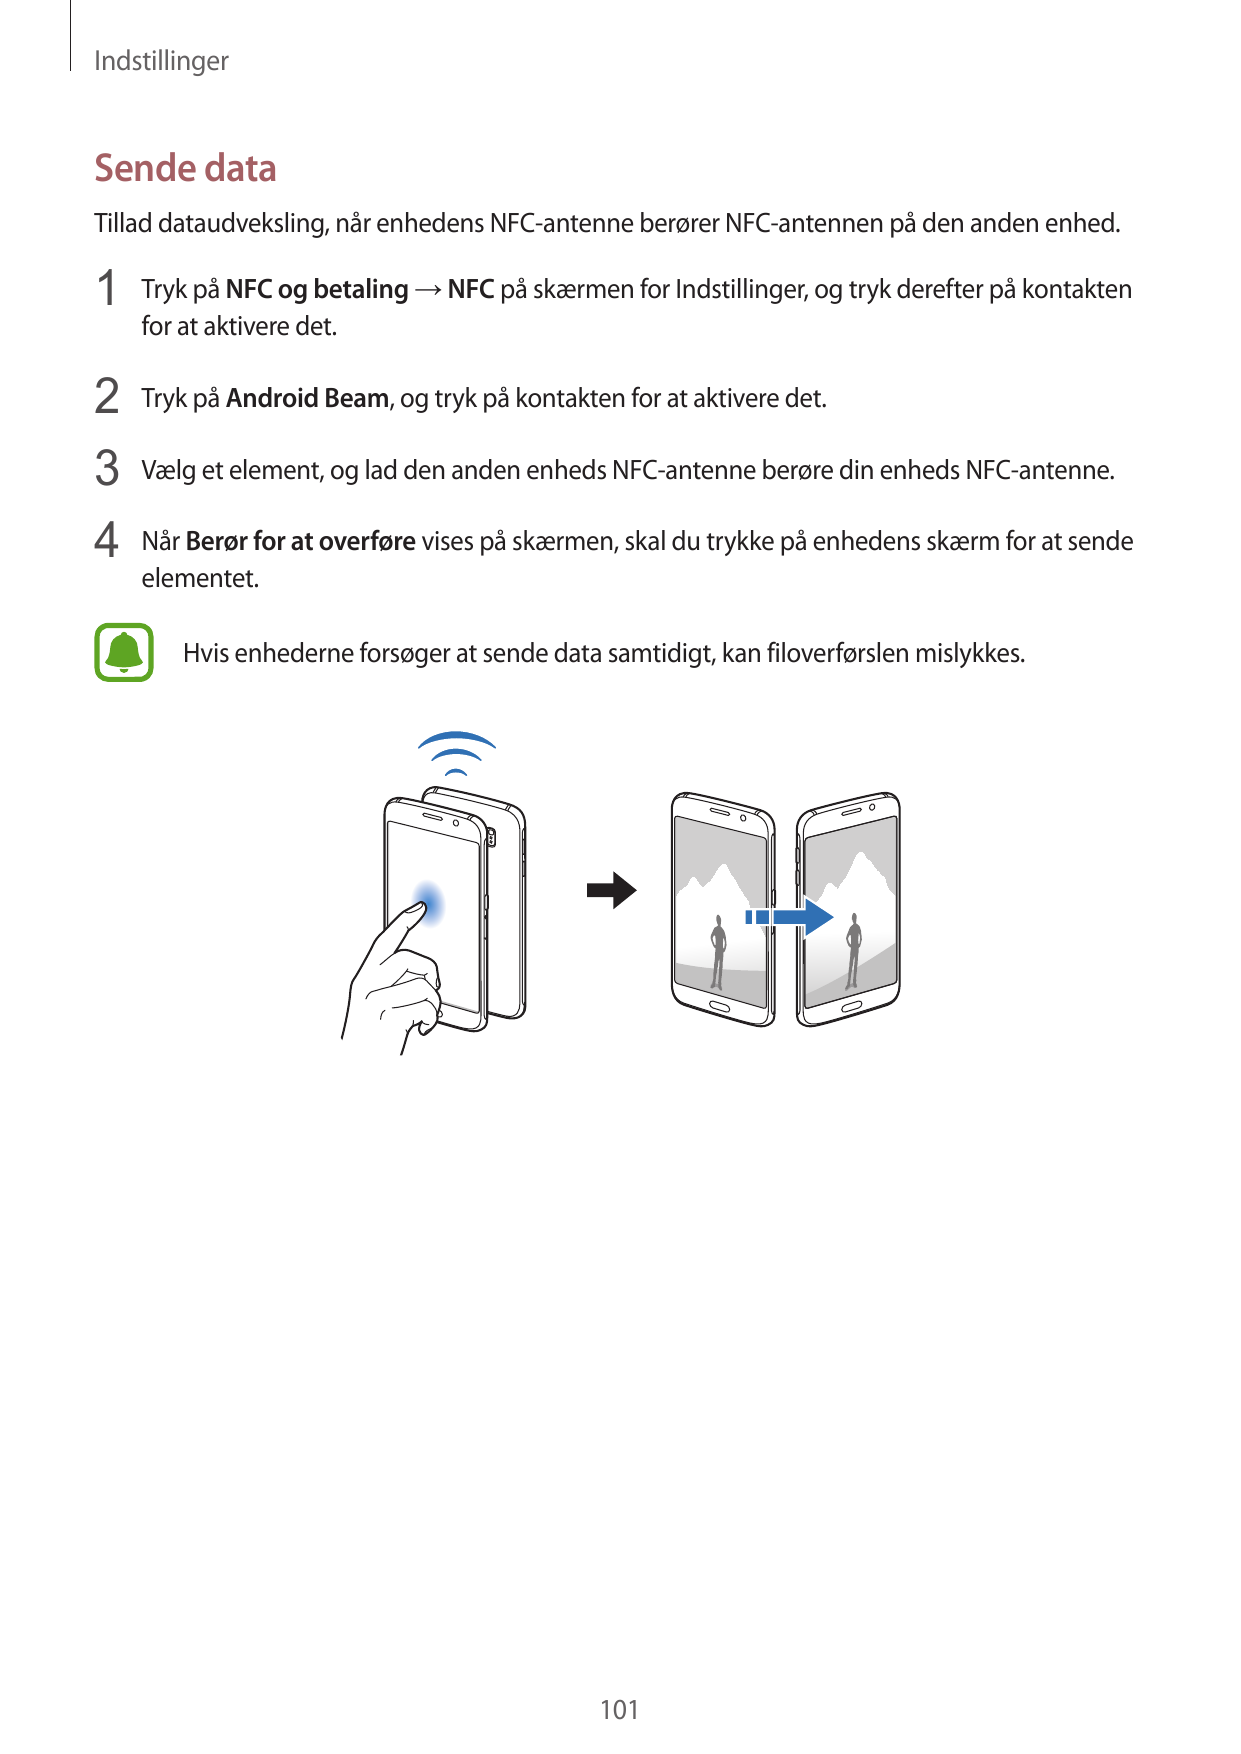 IndstillingerSende dataTillad dataudveksling, når enhedens NFC-antenne berører NFC-antennen på den anden enhed.1 Tryk på NFC og 